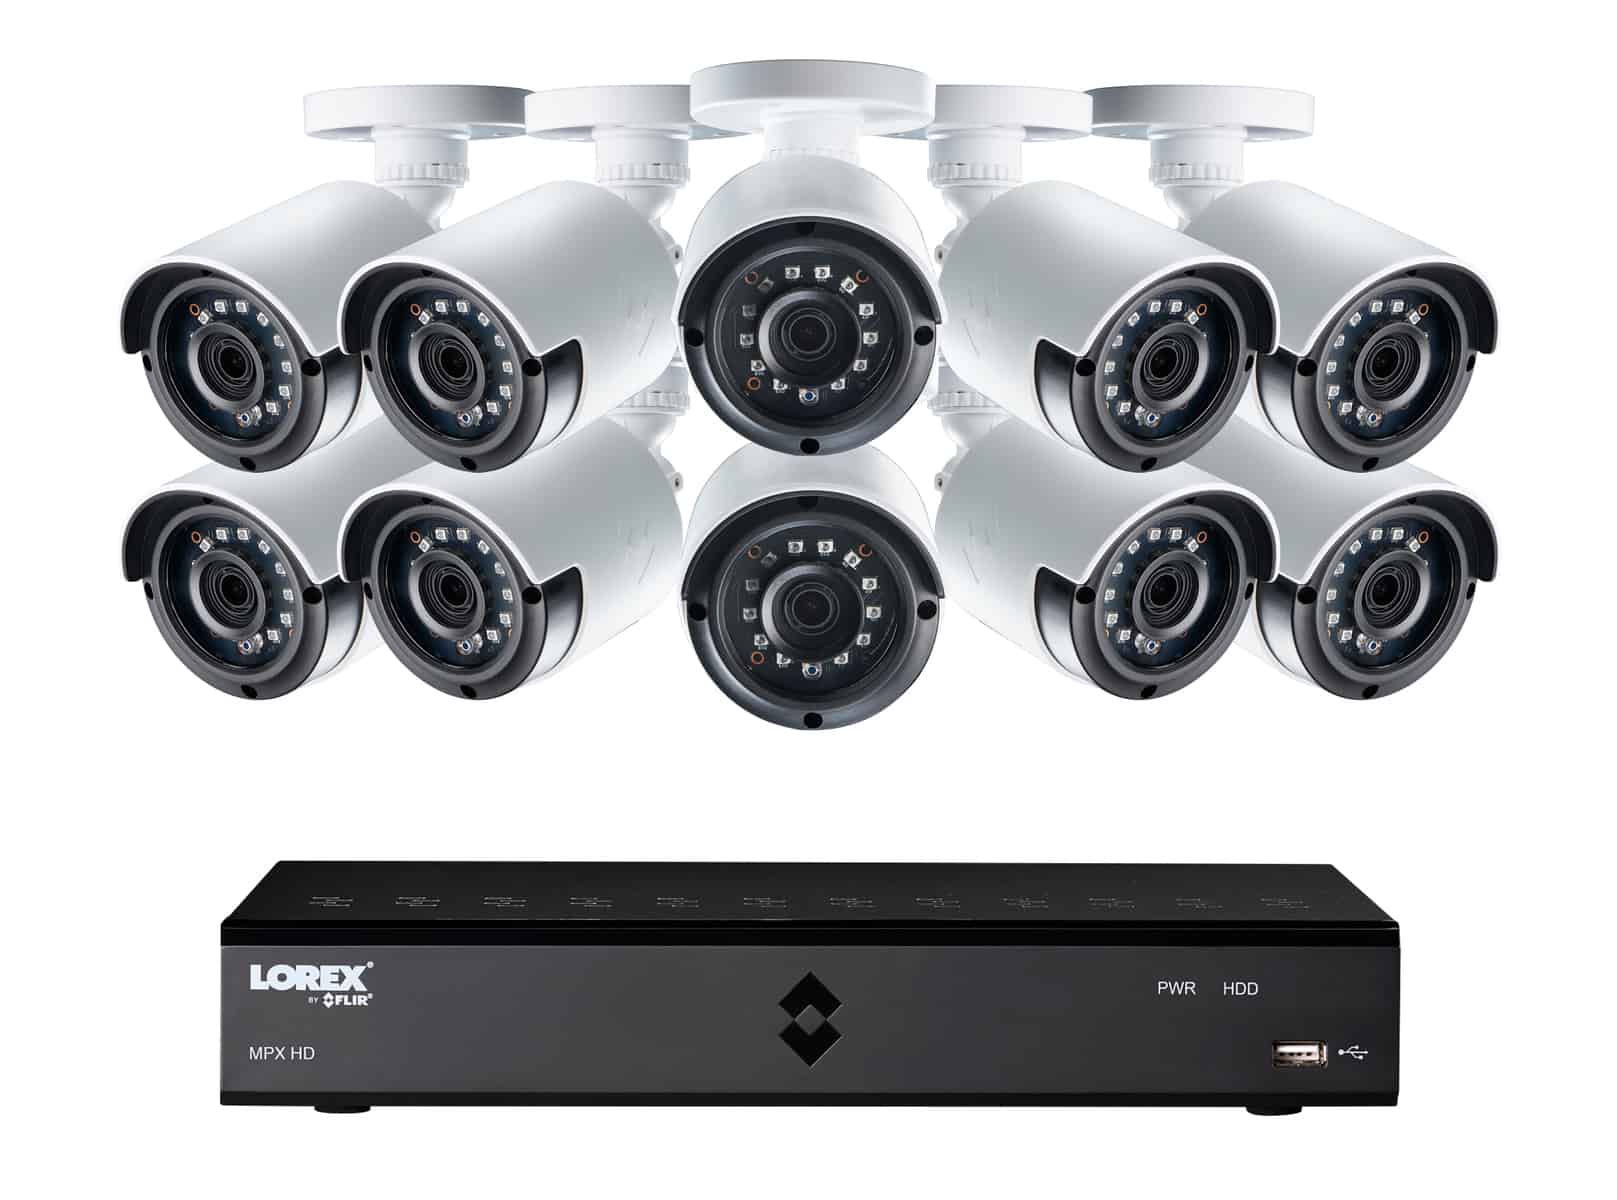 Home Security Cameras, Camera Systems